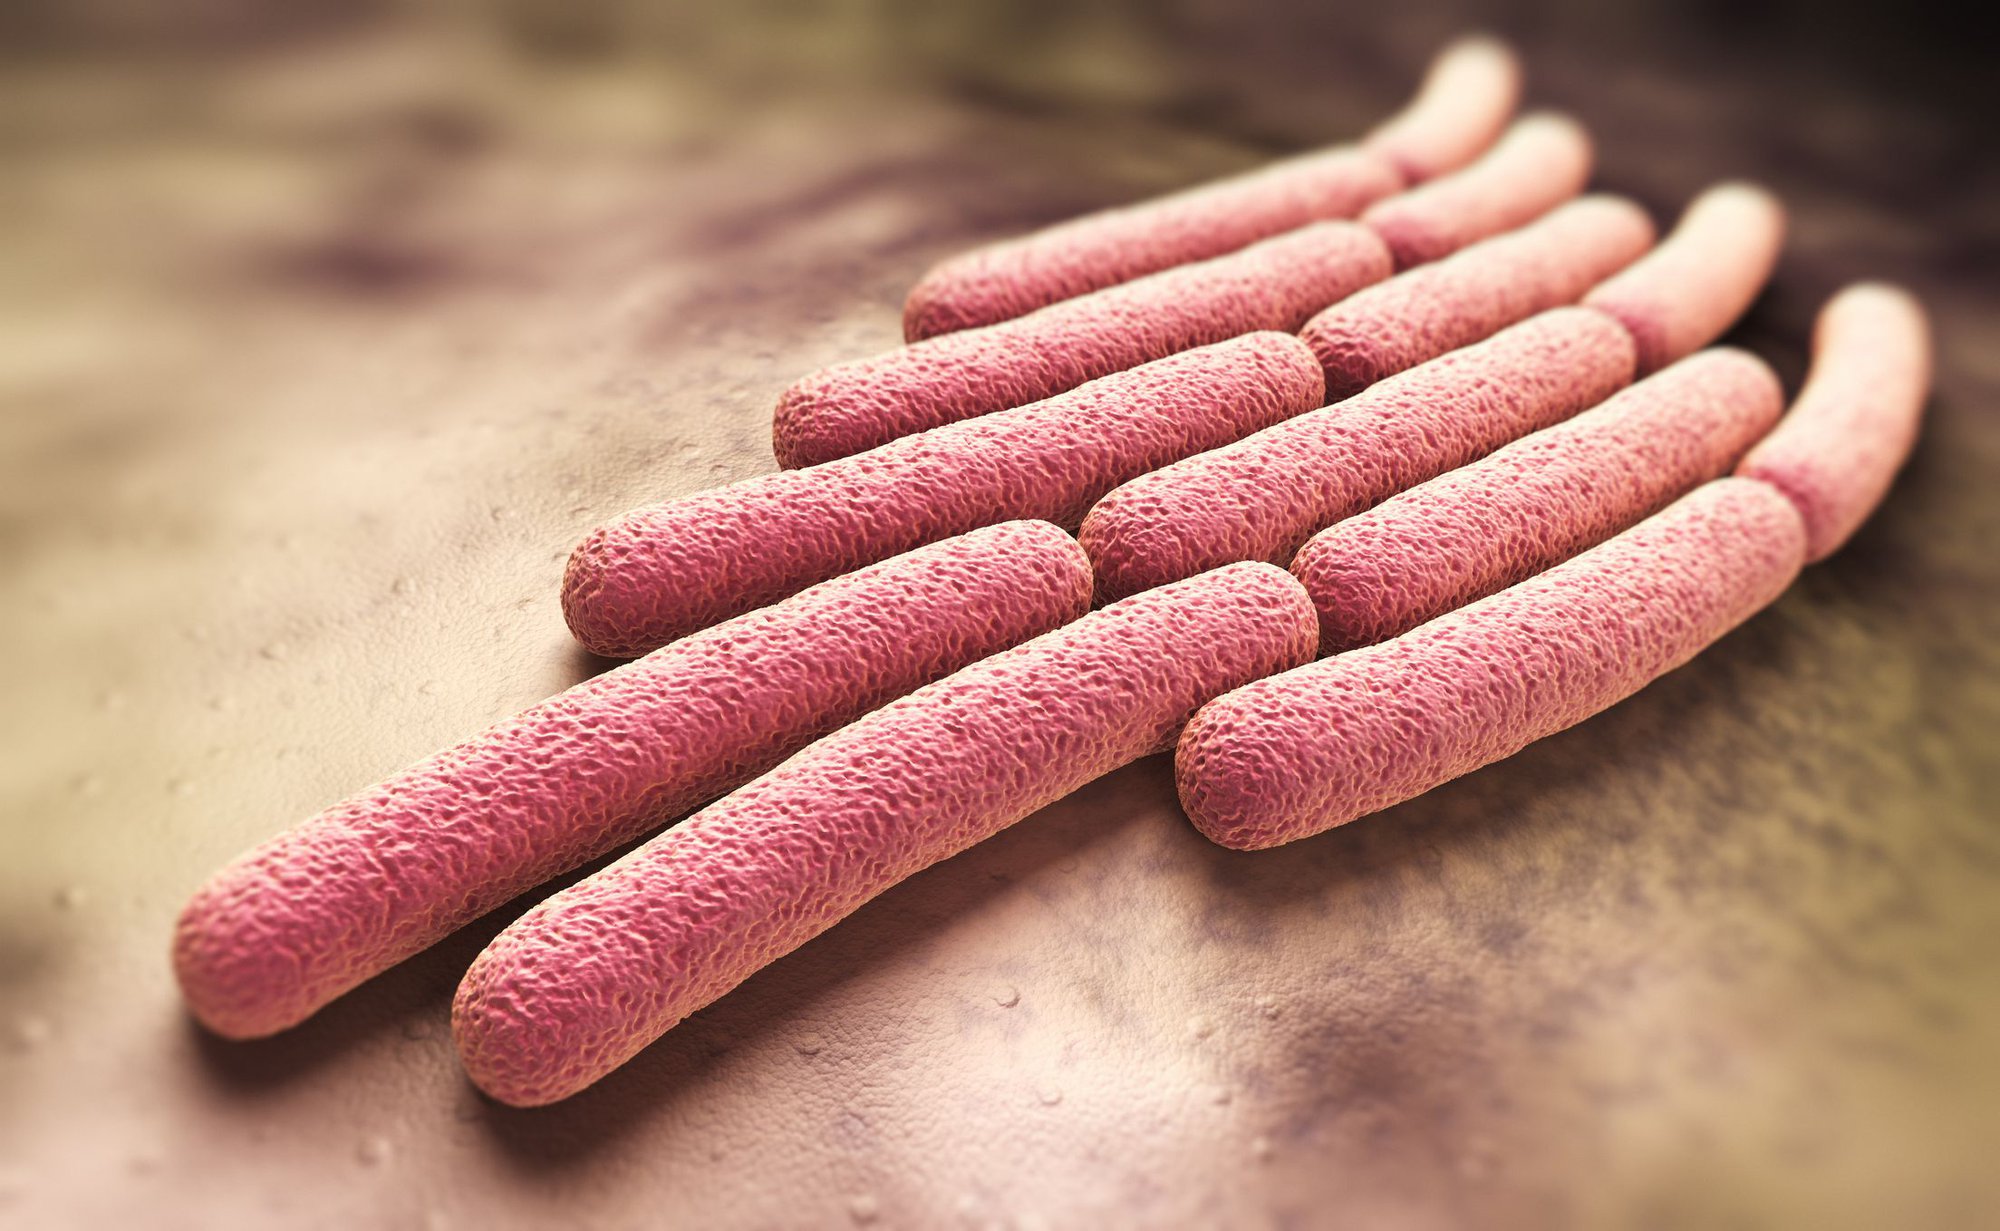 Cảnh báo sự gia tăng bệnh lý do vi khuẩn Shigella: Những điều cần biết để bảo vệ sức khoẻ - Ảnh 2.